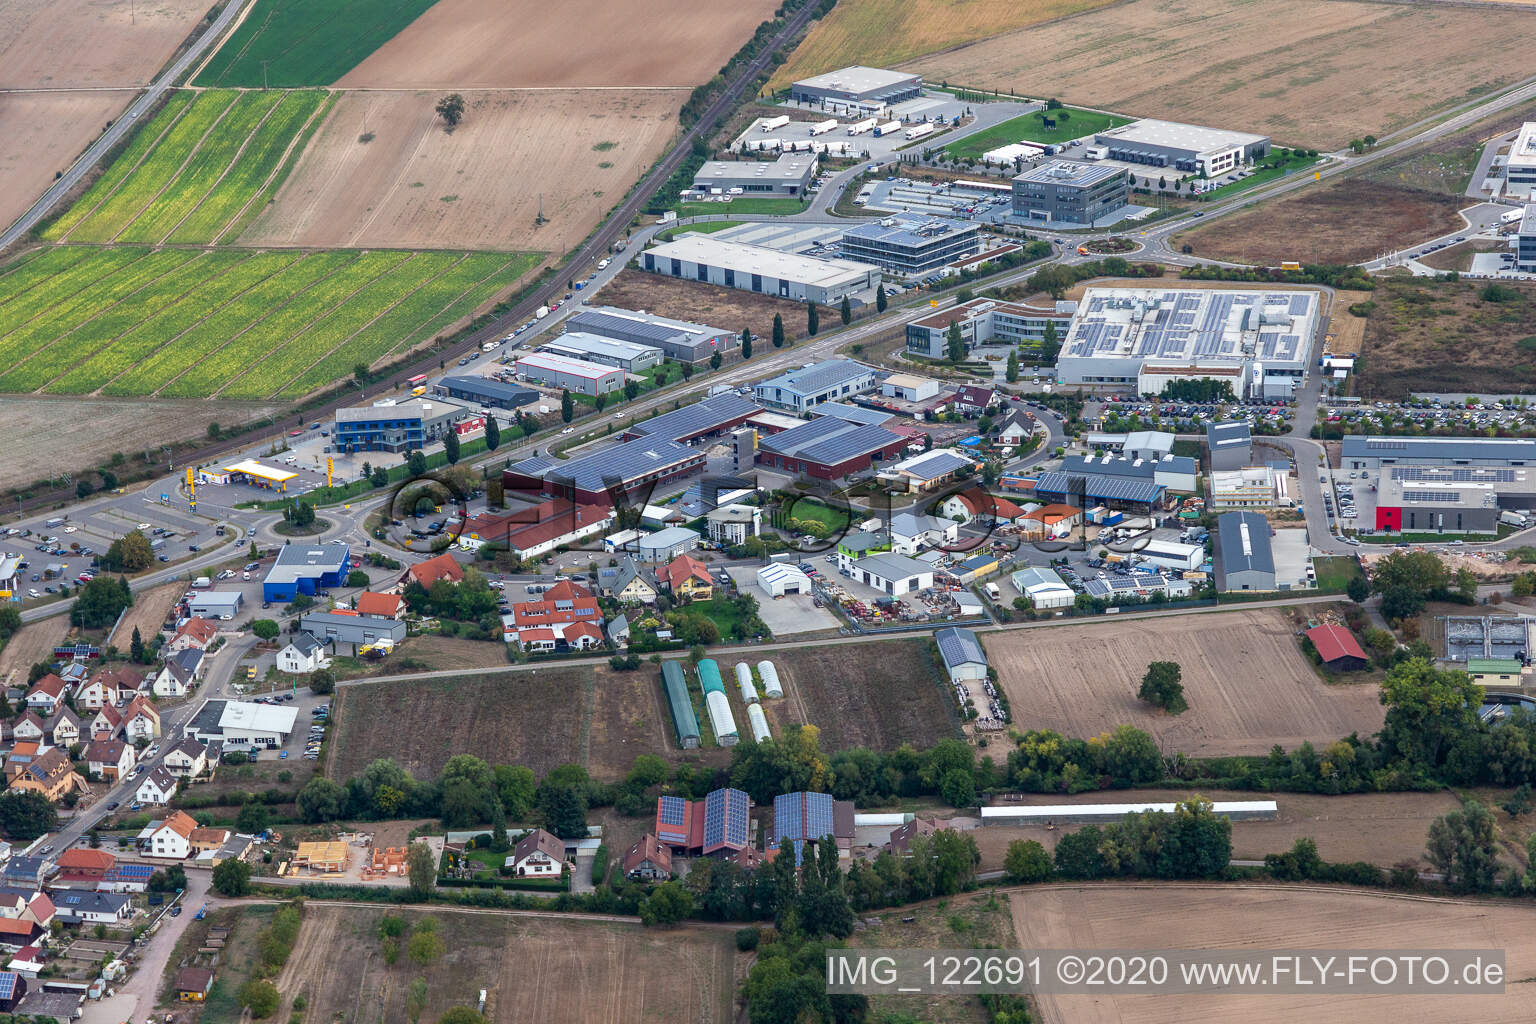 Vue aérienne de Zone industrielle et commerciale nord avec ITK Engineering GmbH, DBK David + Baader, Transac et Fischer Fahrradmarke à Rülzheim dans le département Rhénanie-Palatinat, Allemagne